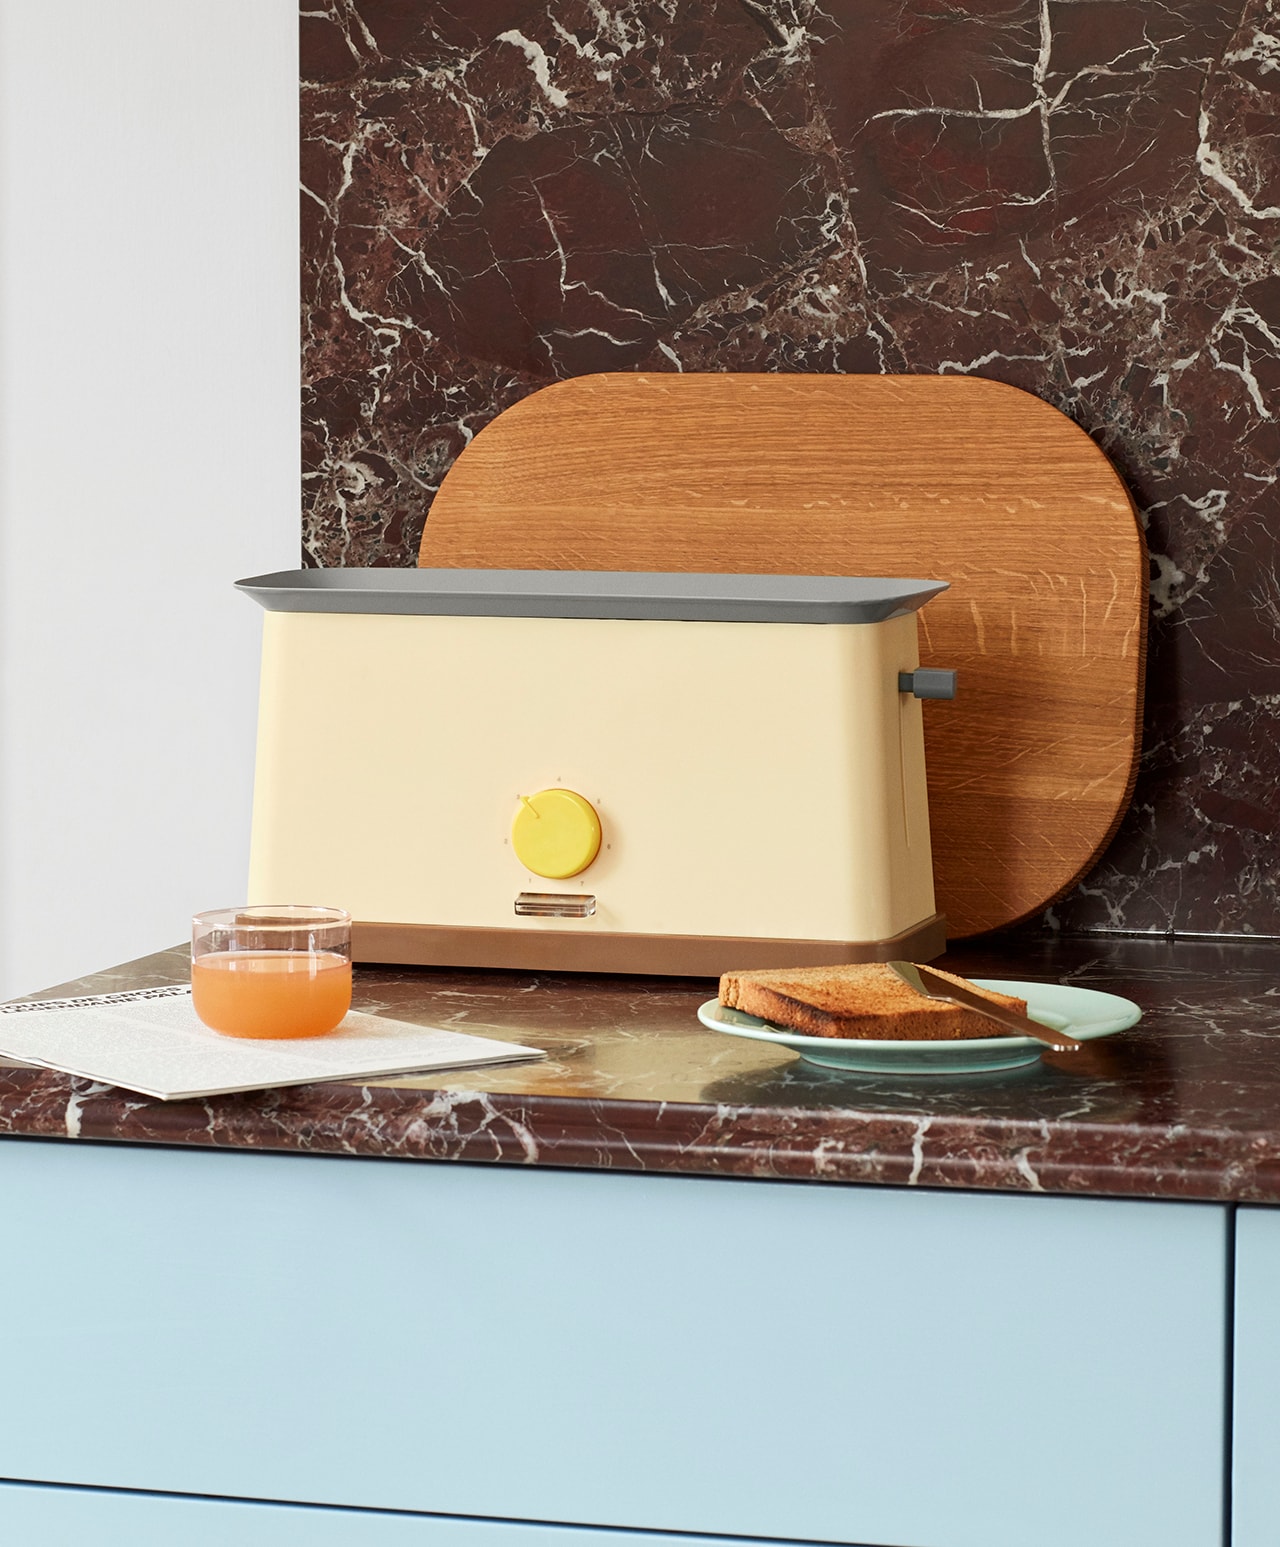 HAY Toaster George Sowden Kitchen Appliances Denmark Danish Design Home Scandinavian Pastel Yellow